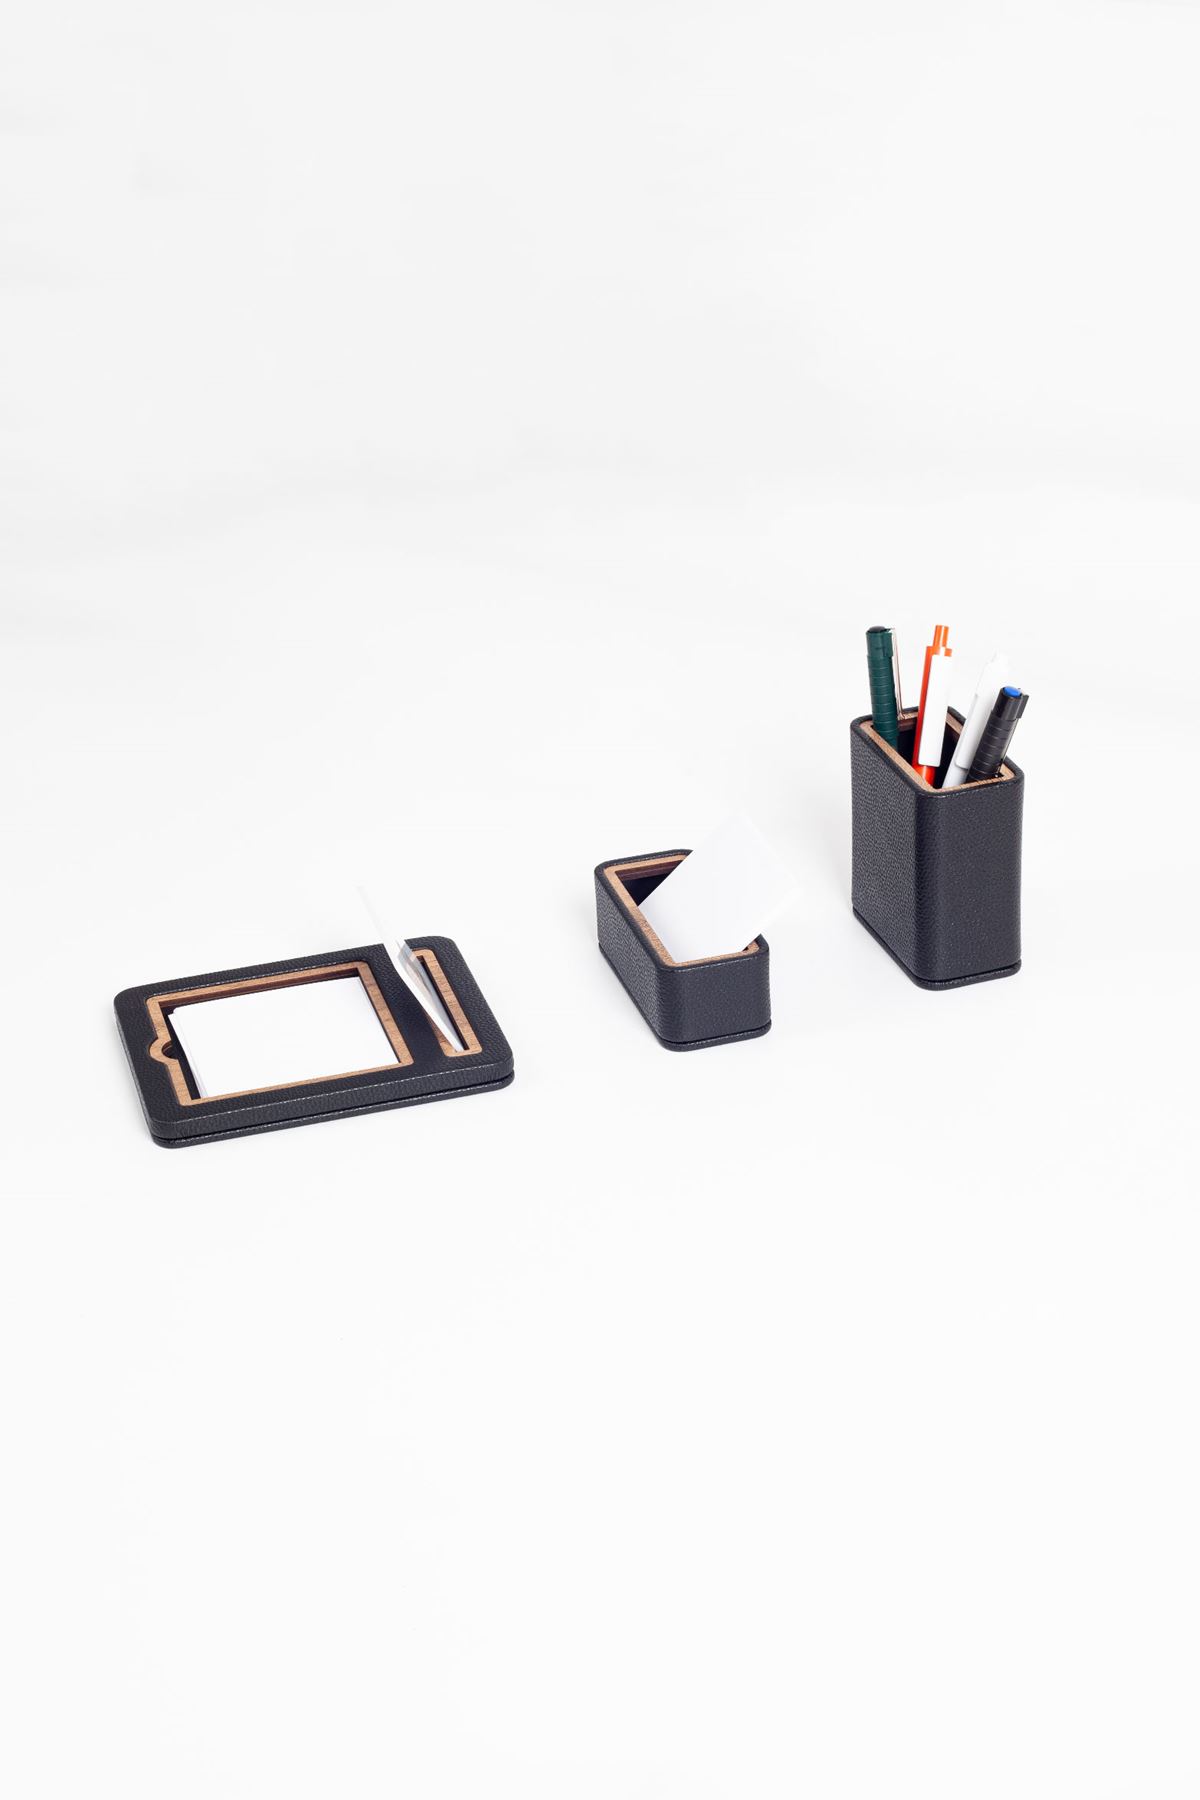 Capella Leather Desktop Set Black 3 Pieces Wooden Detailed